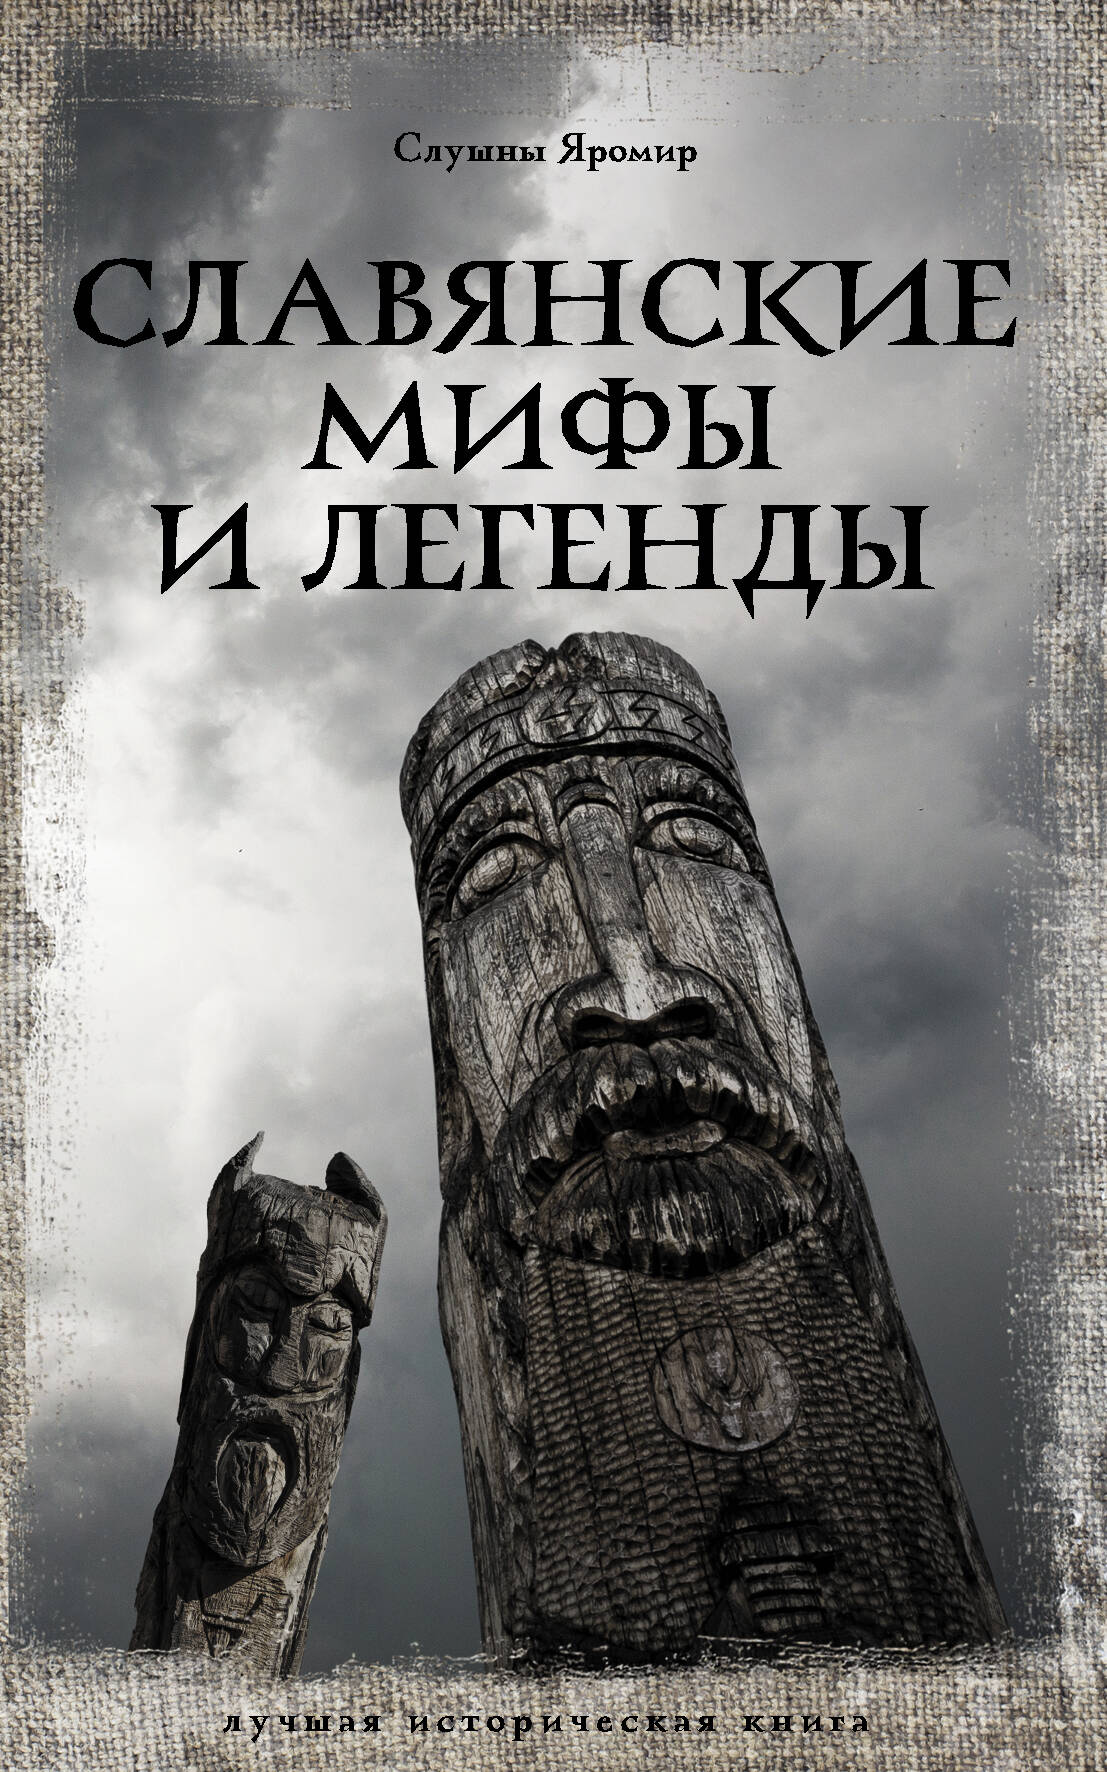 Слушны Яромир Славянские мифы и легенды слушны яромир все славянские мифы и легенды